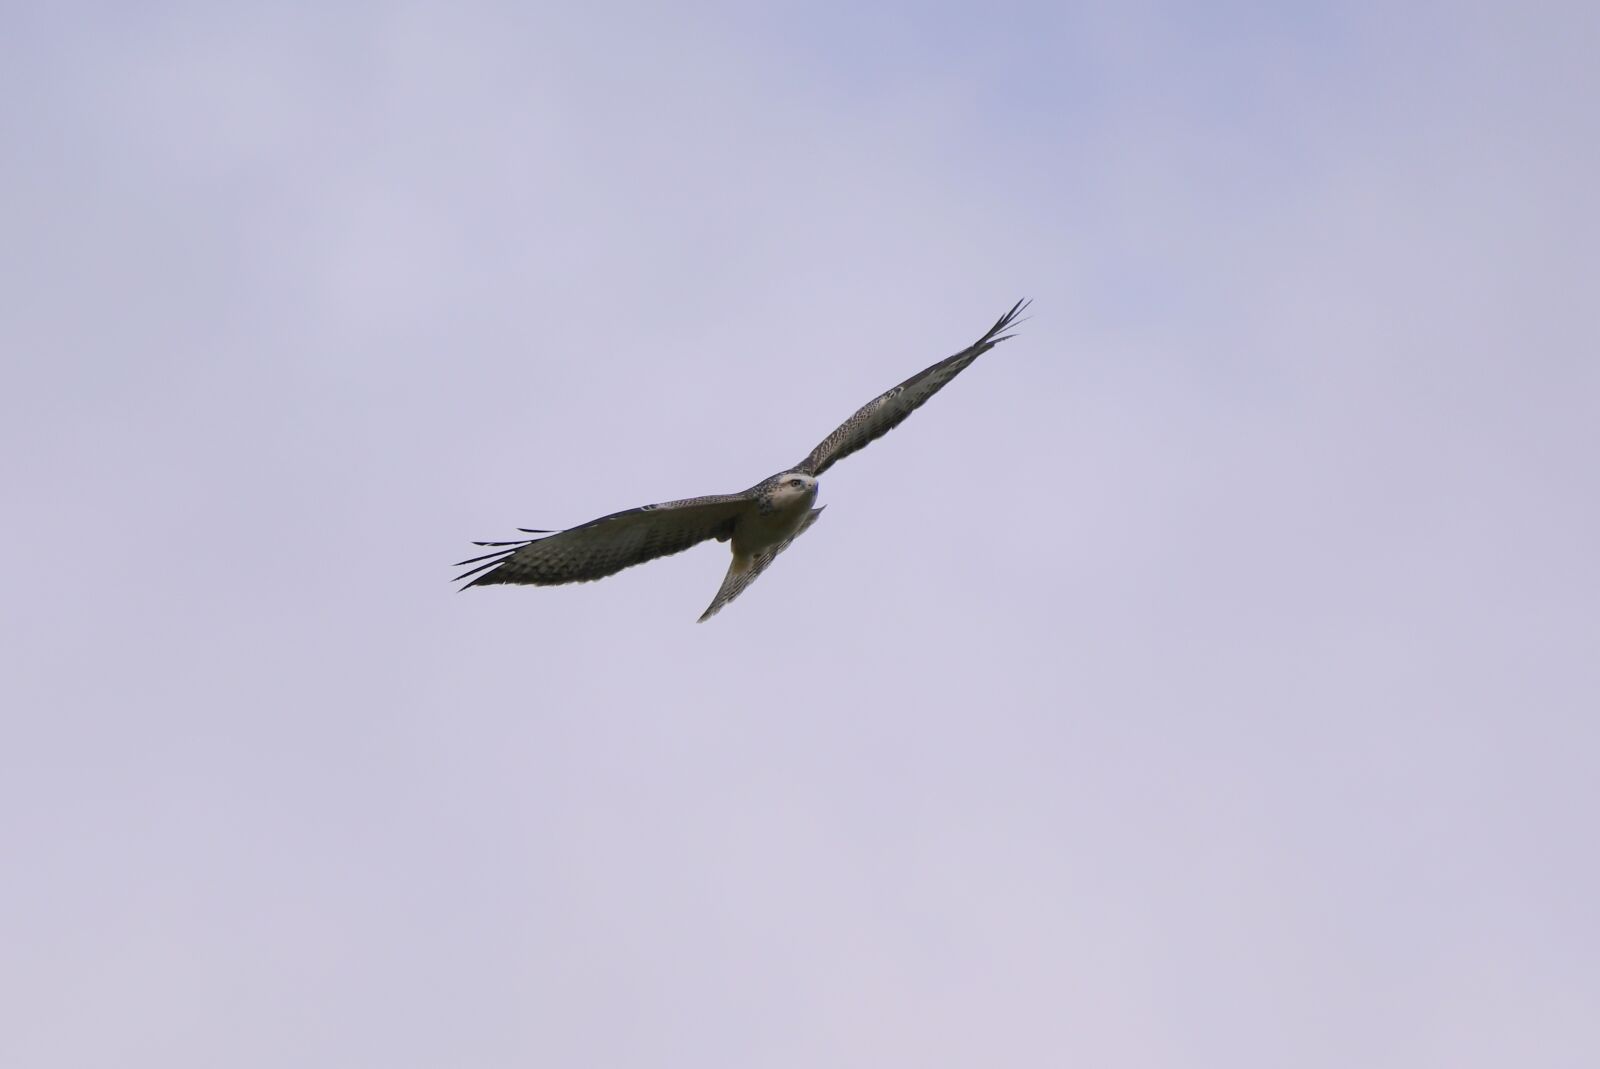 Nikon D500 sample photo. Common buzzard, bird of photography